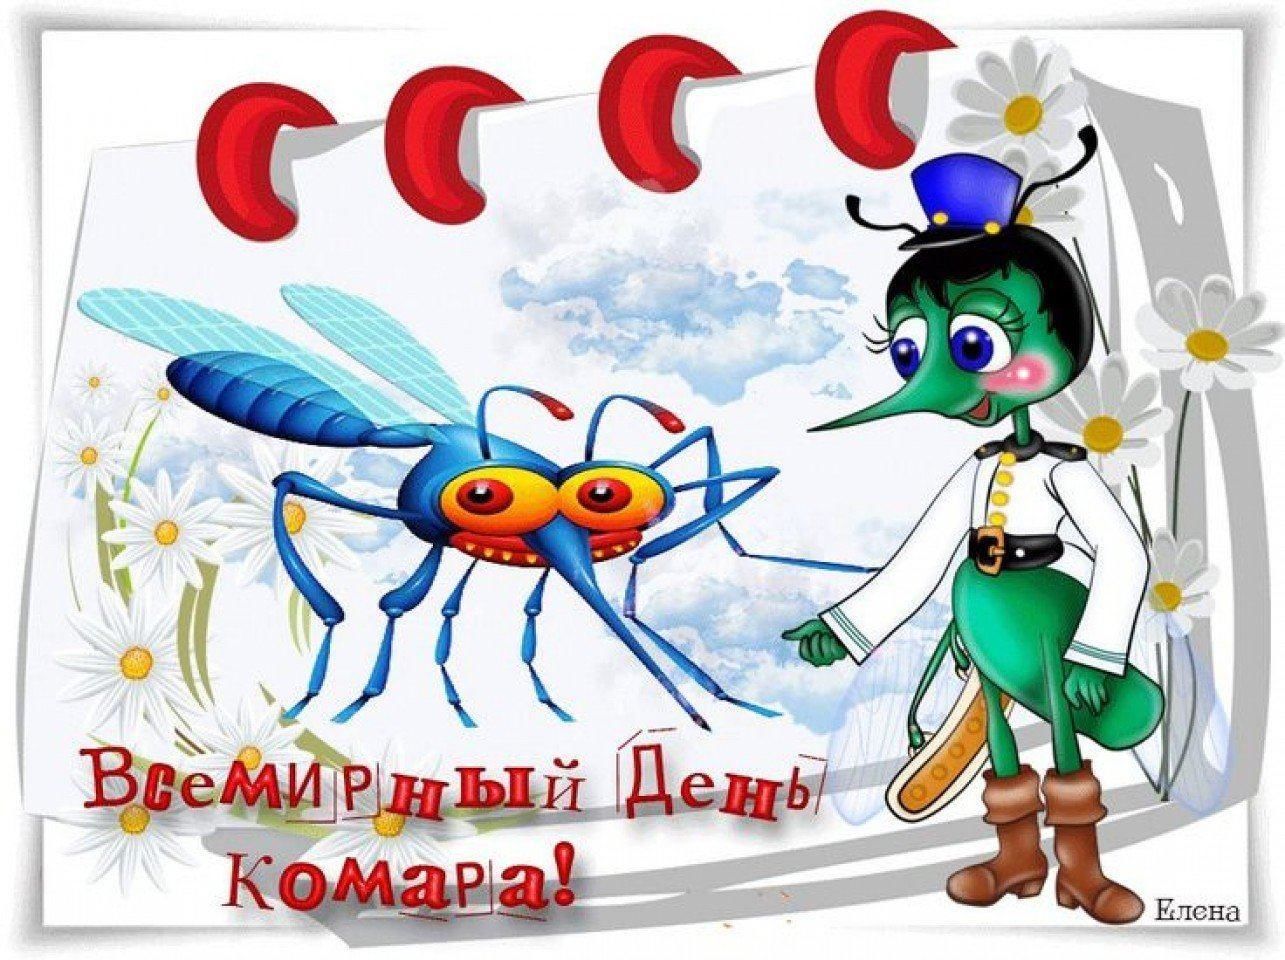 Всемирный день комара